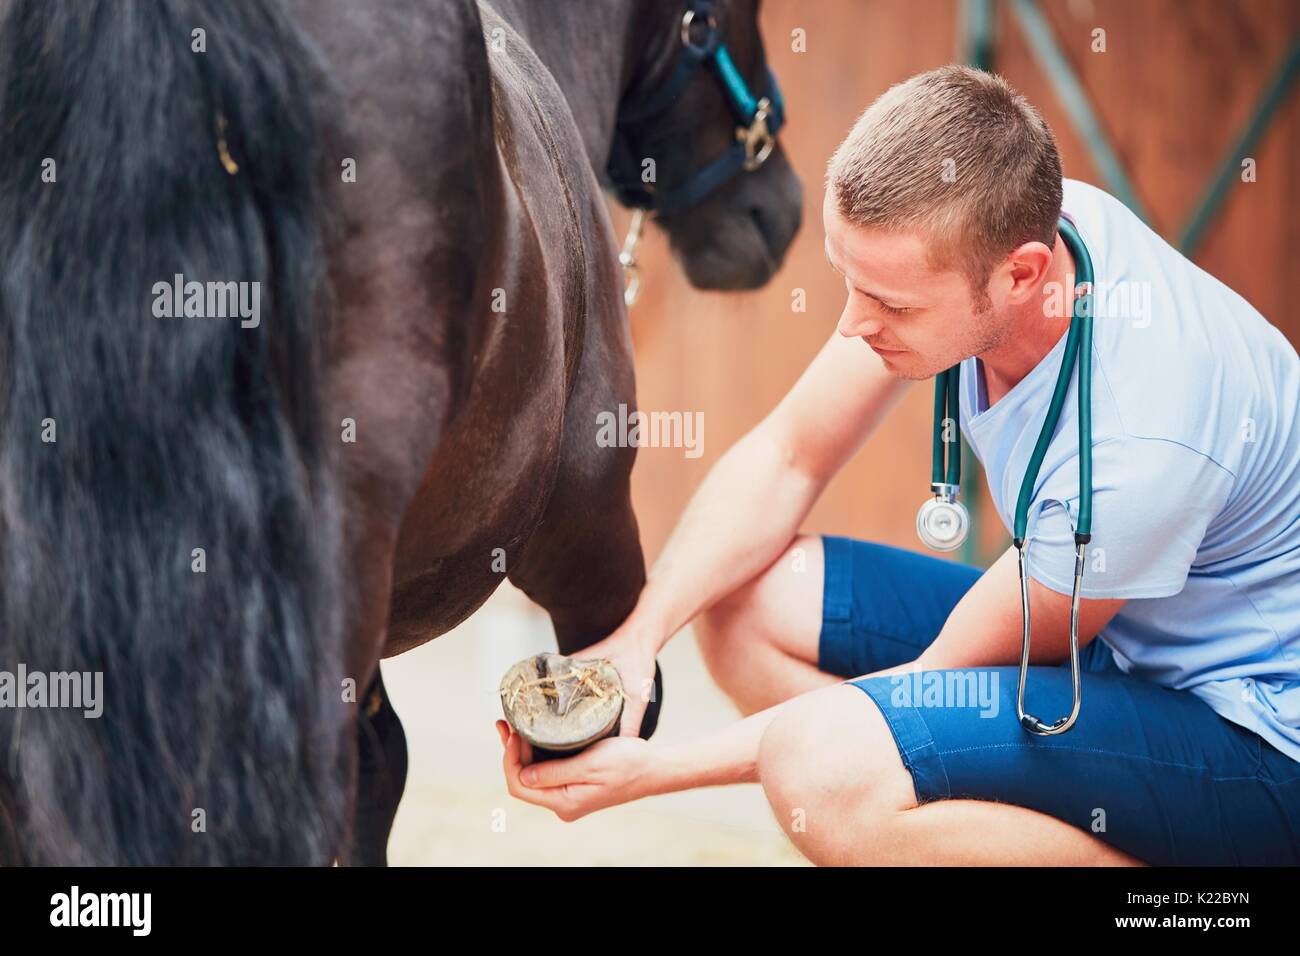 La médecine vétérinaire à la ferme. L'examen vétérinaire de la jambe. Banque D'Images